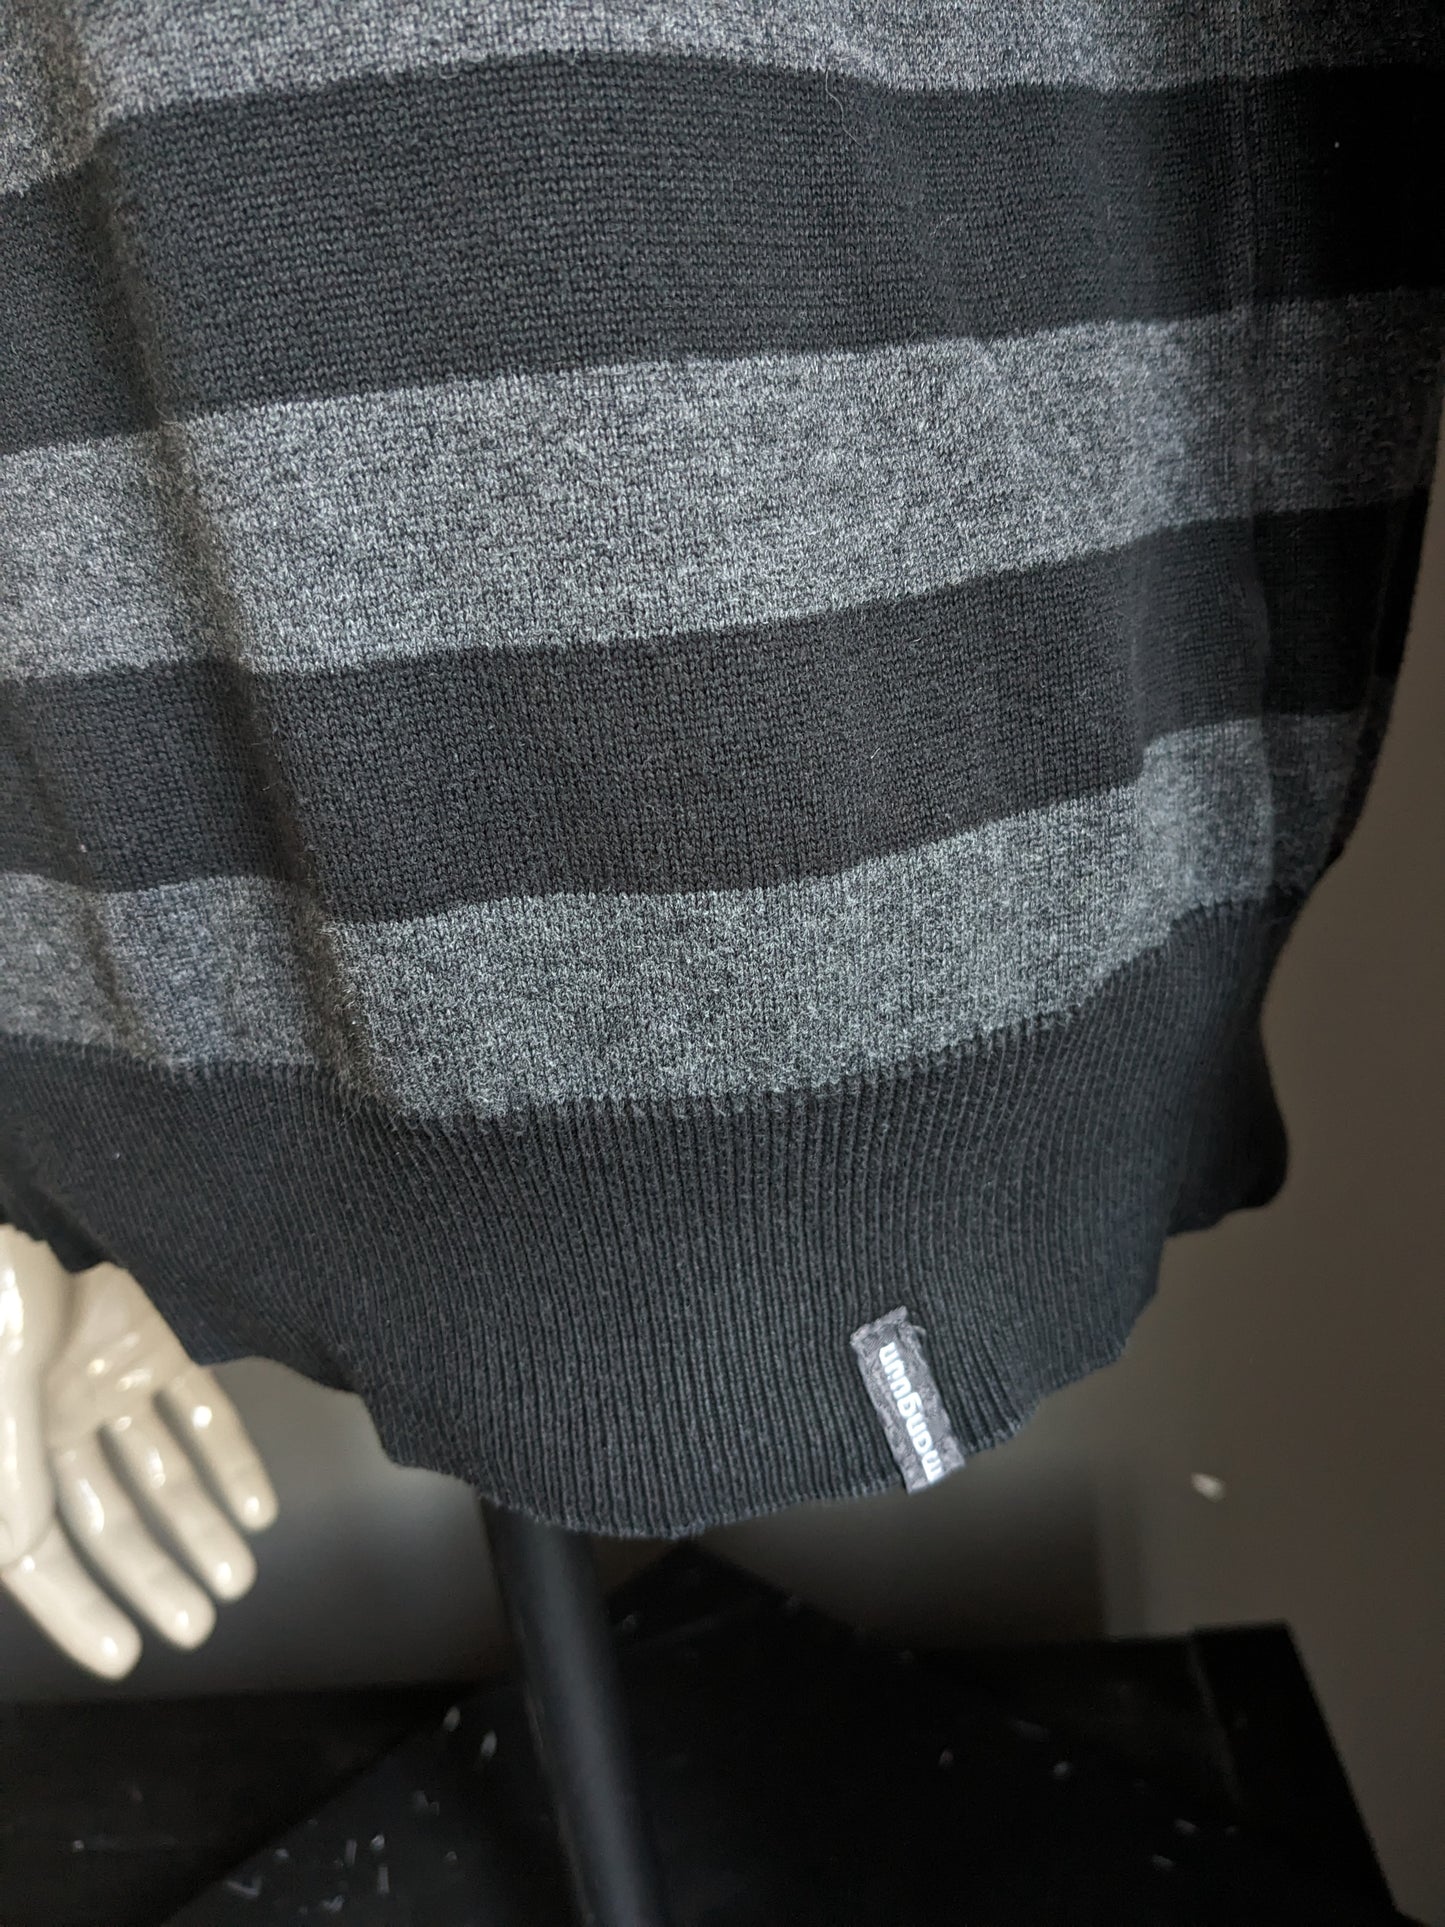 MANGUUN Casual Pullover mit Ellbogenstrichen. Schwarz grau gestreift. Größe xl.